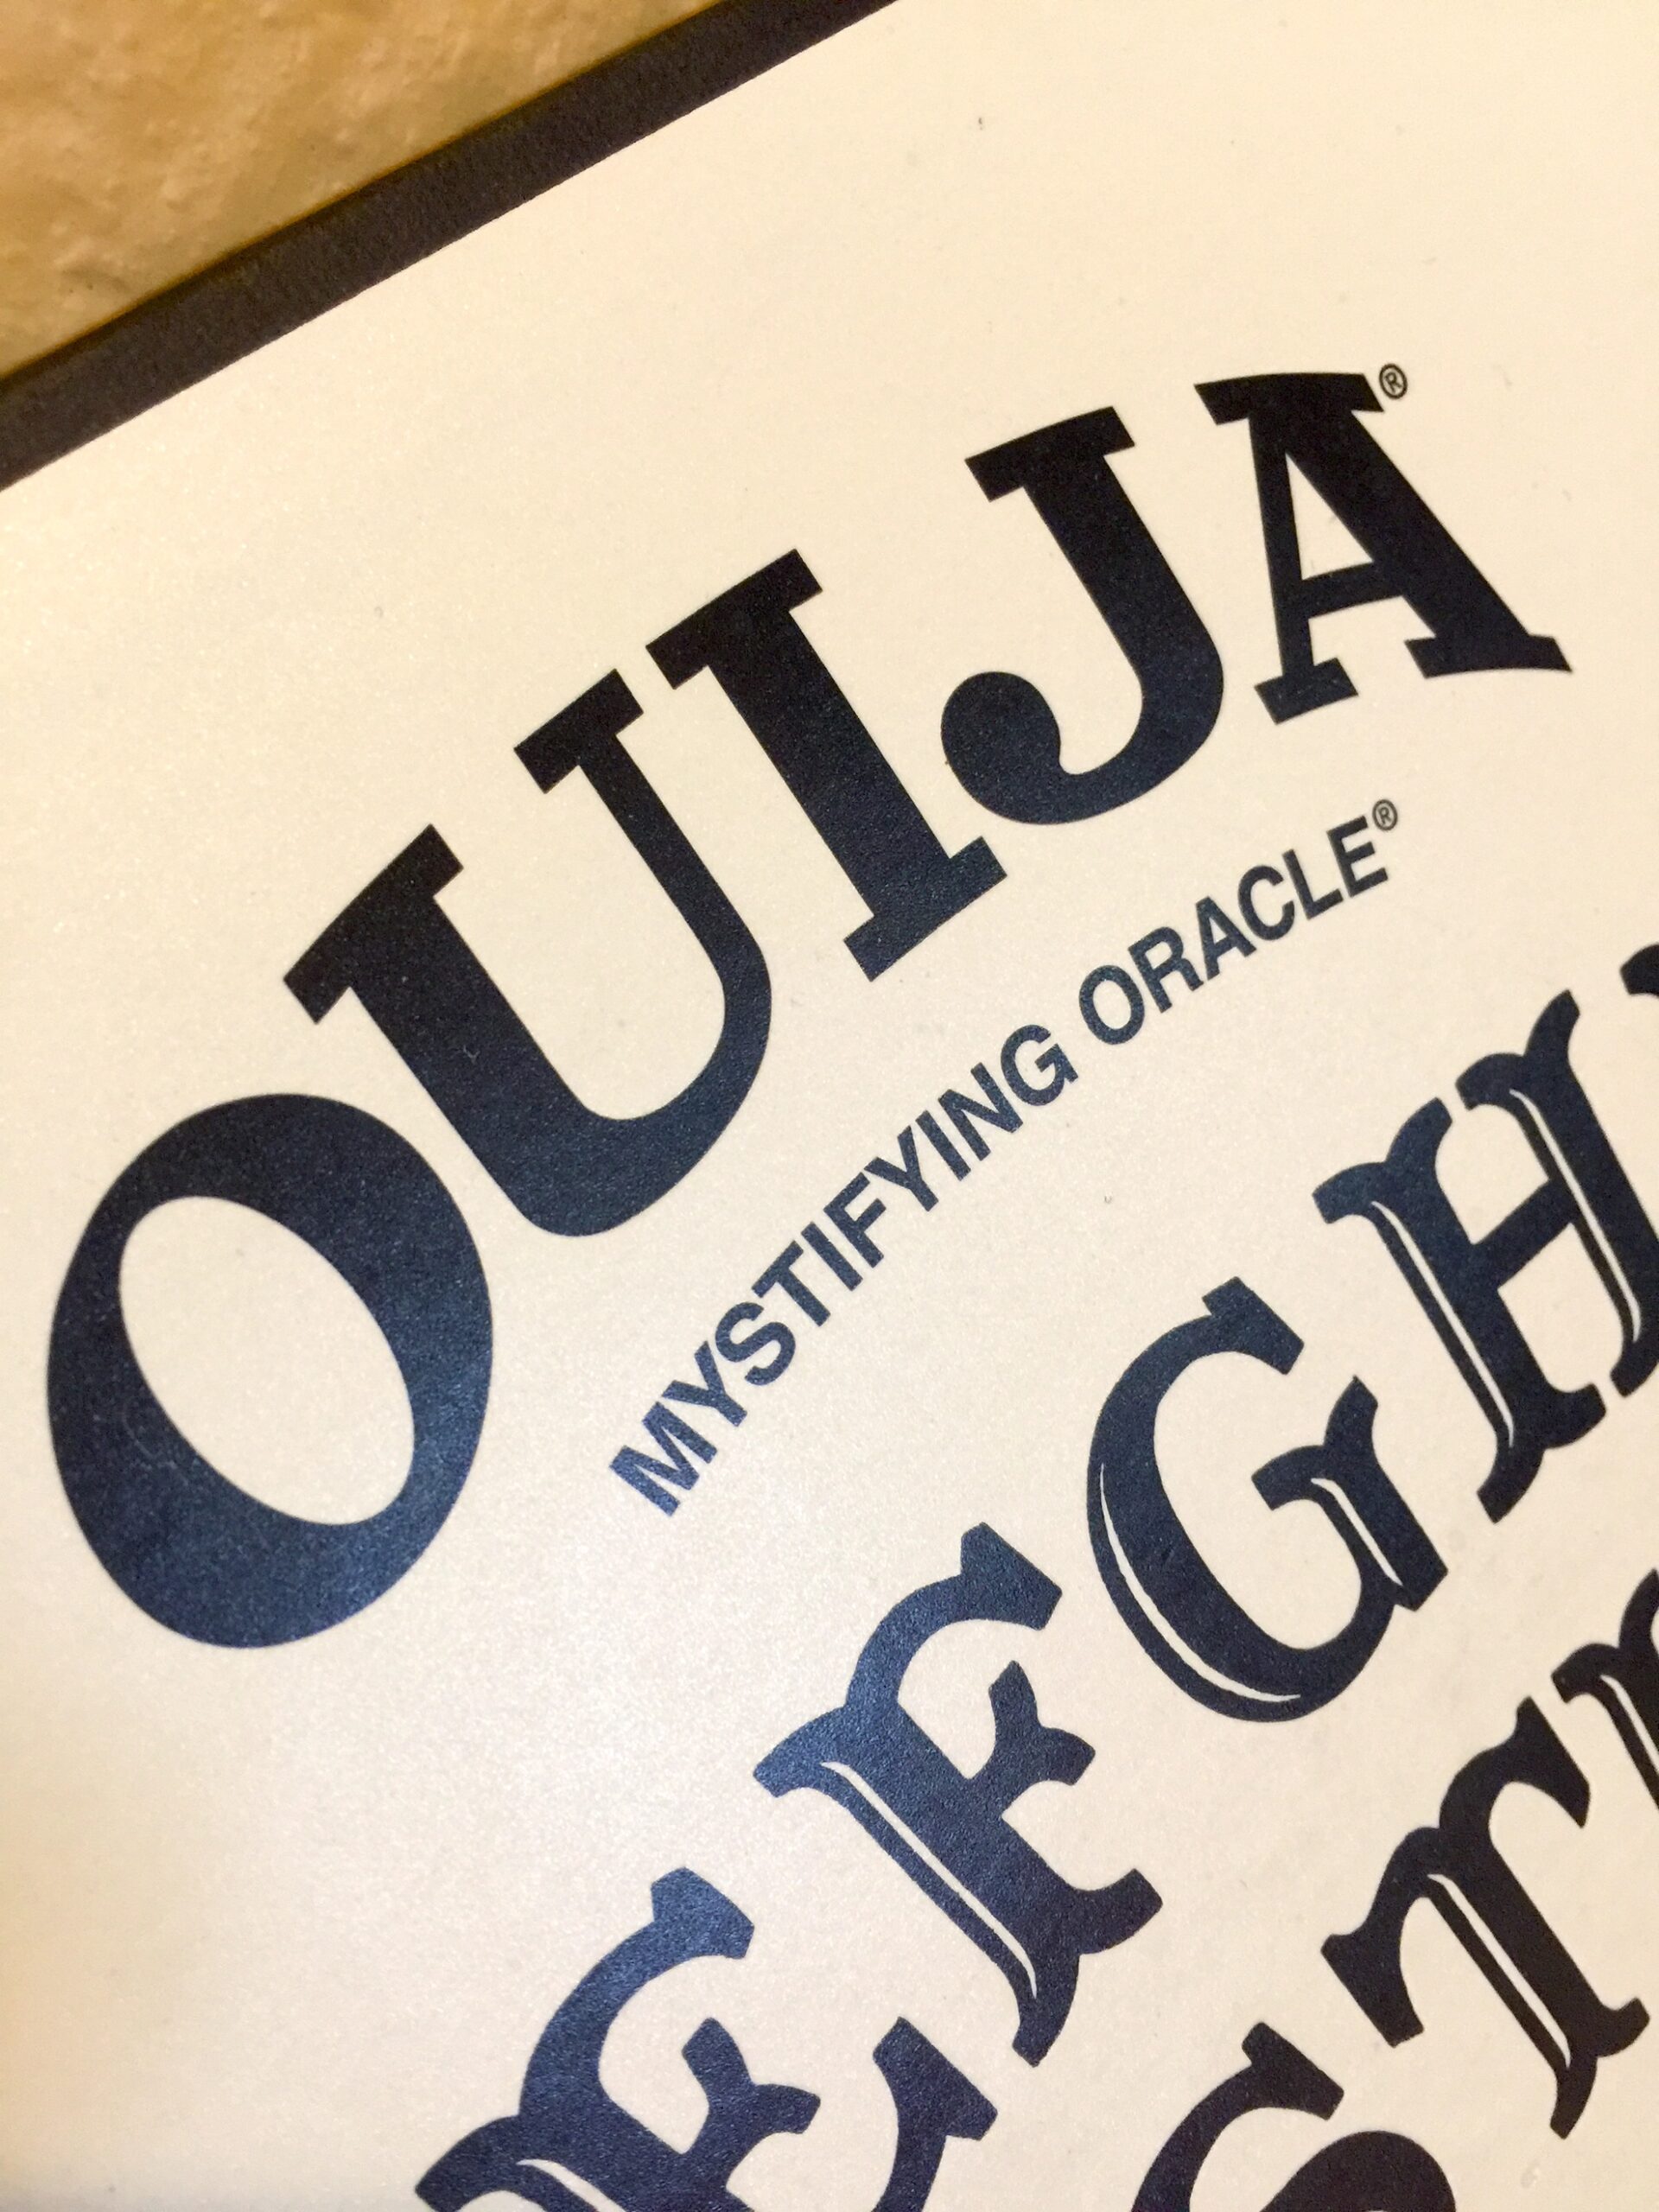 Solo Ouija: Is it Safe?